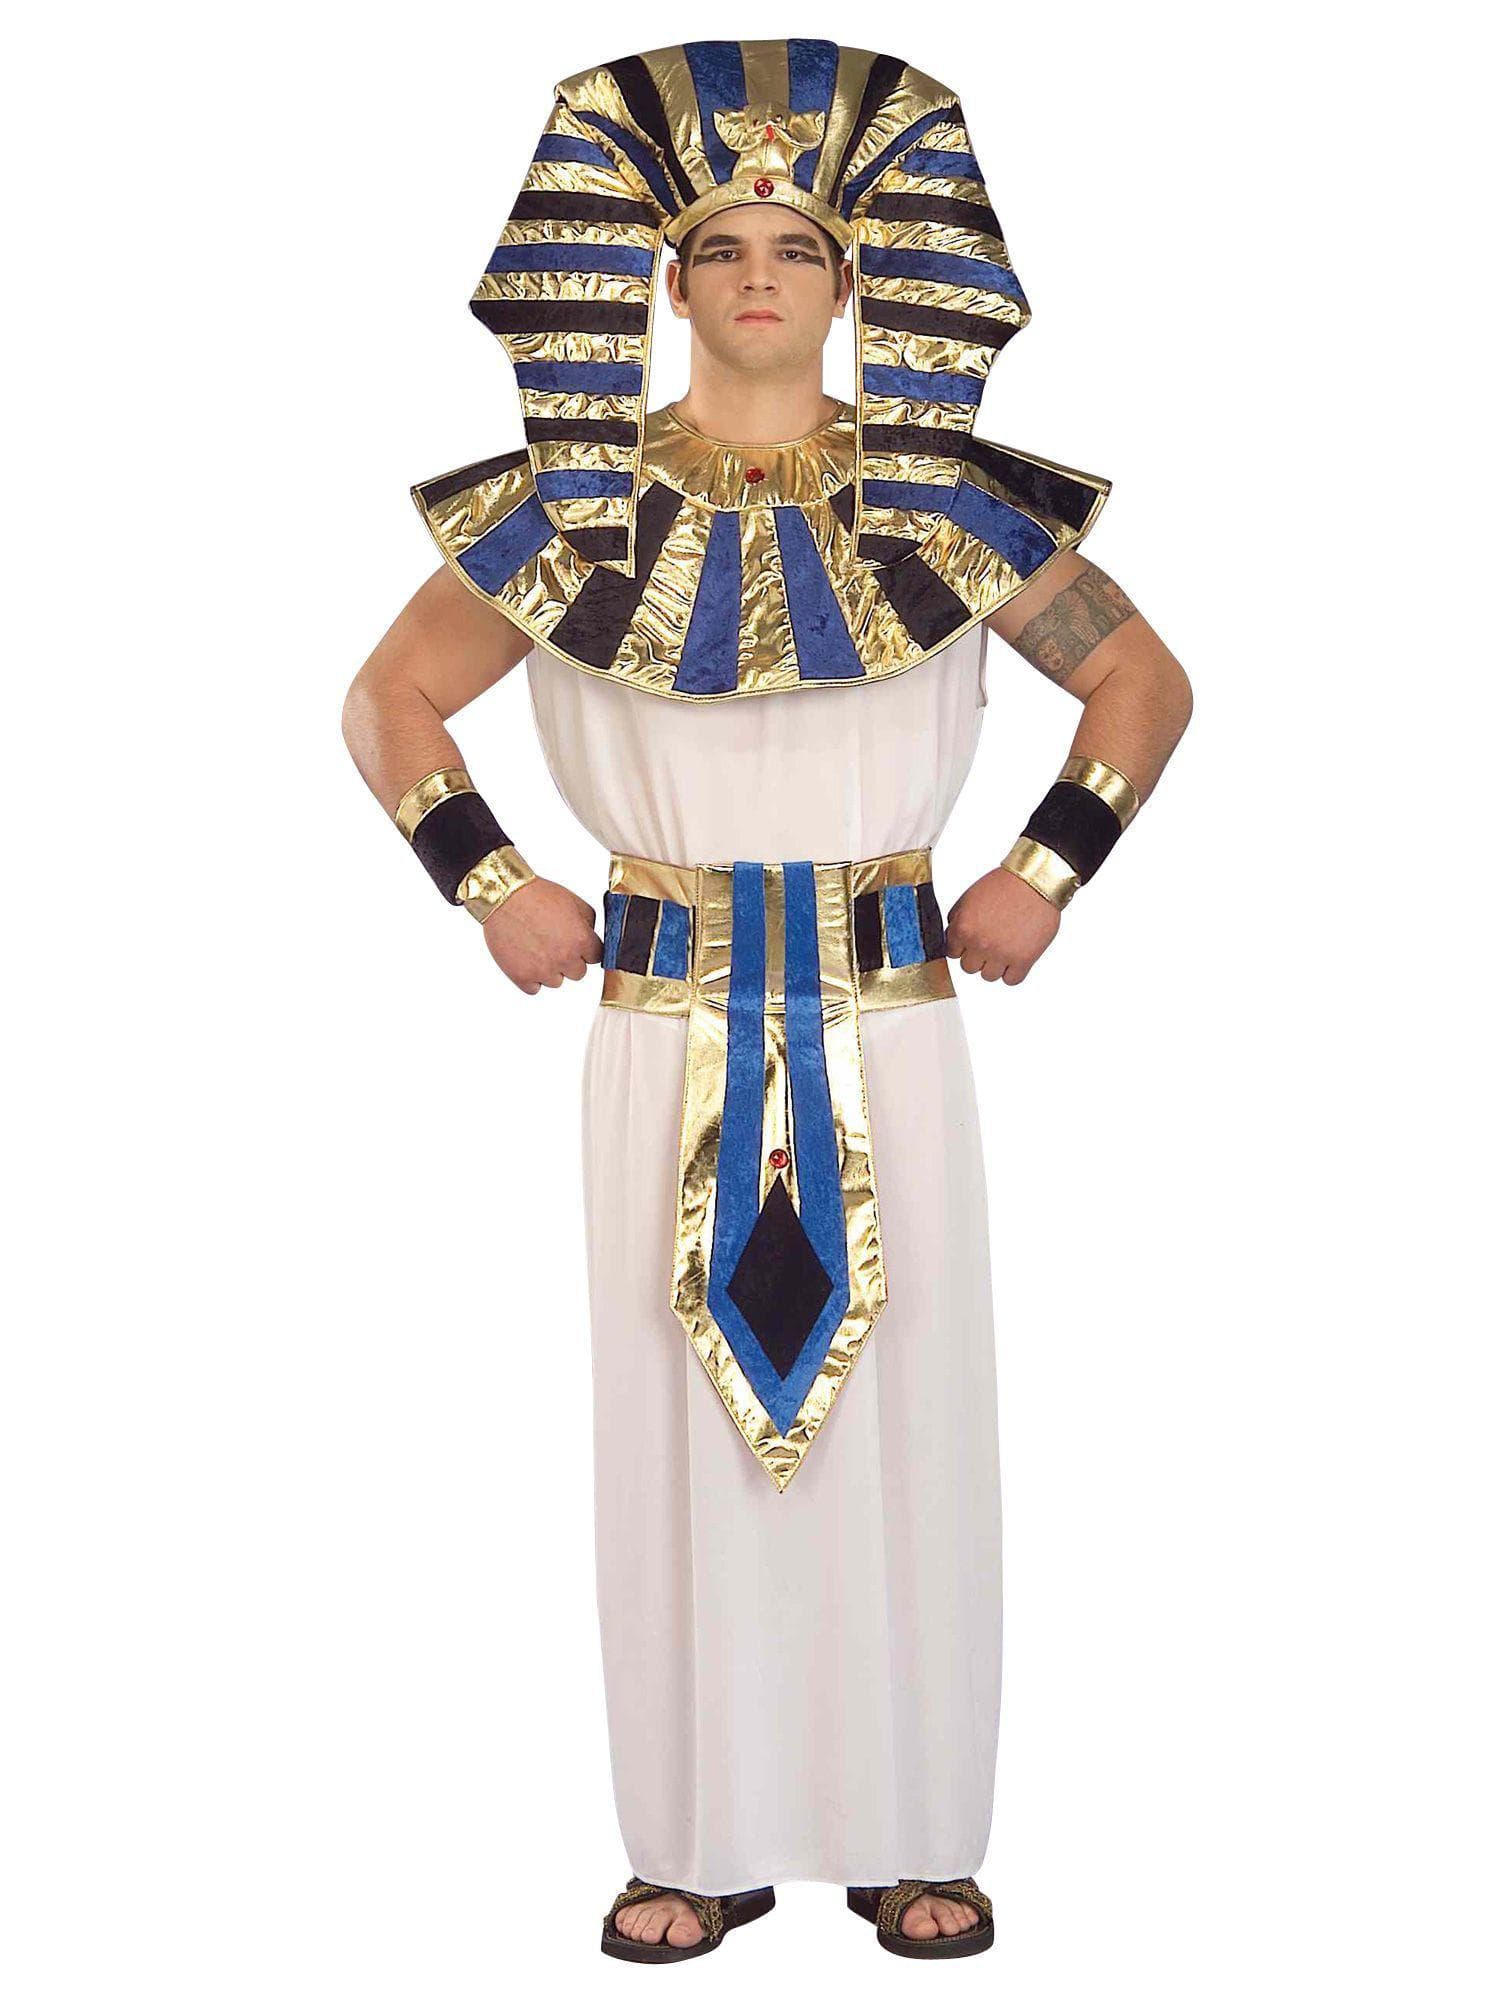 Adult Super Tut Costume - costumes.com